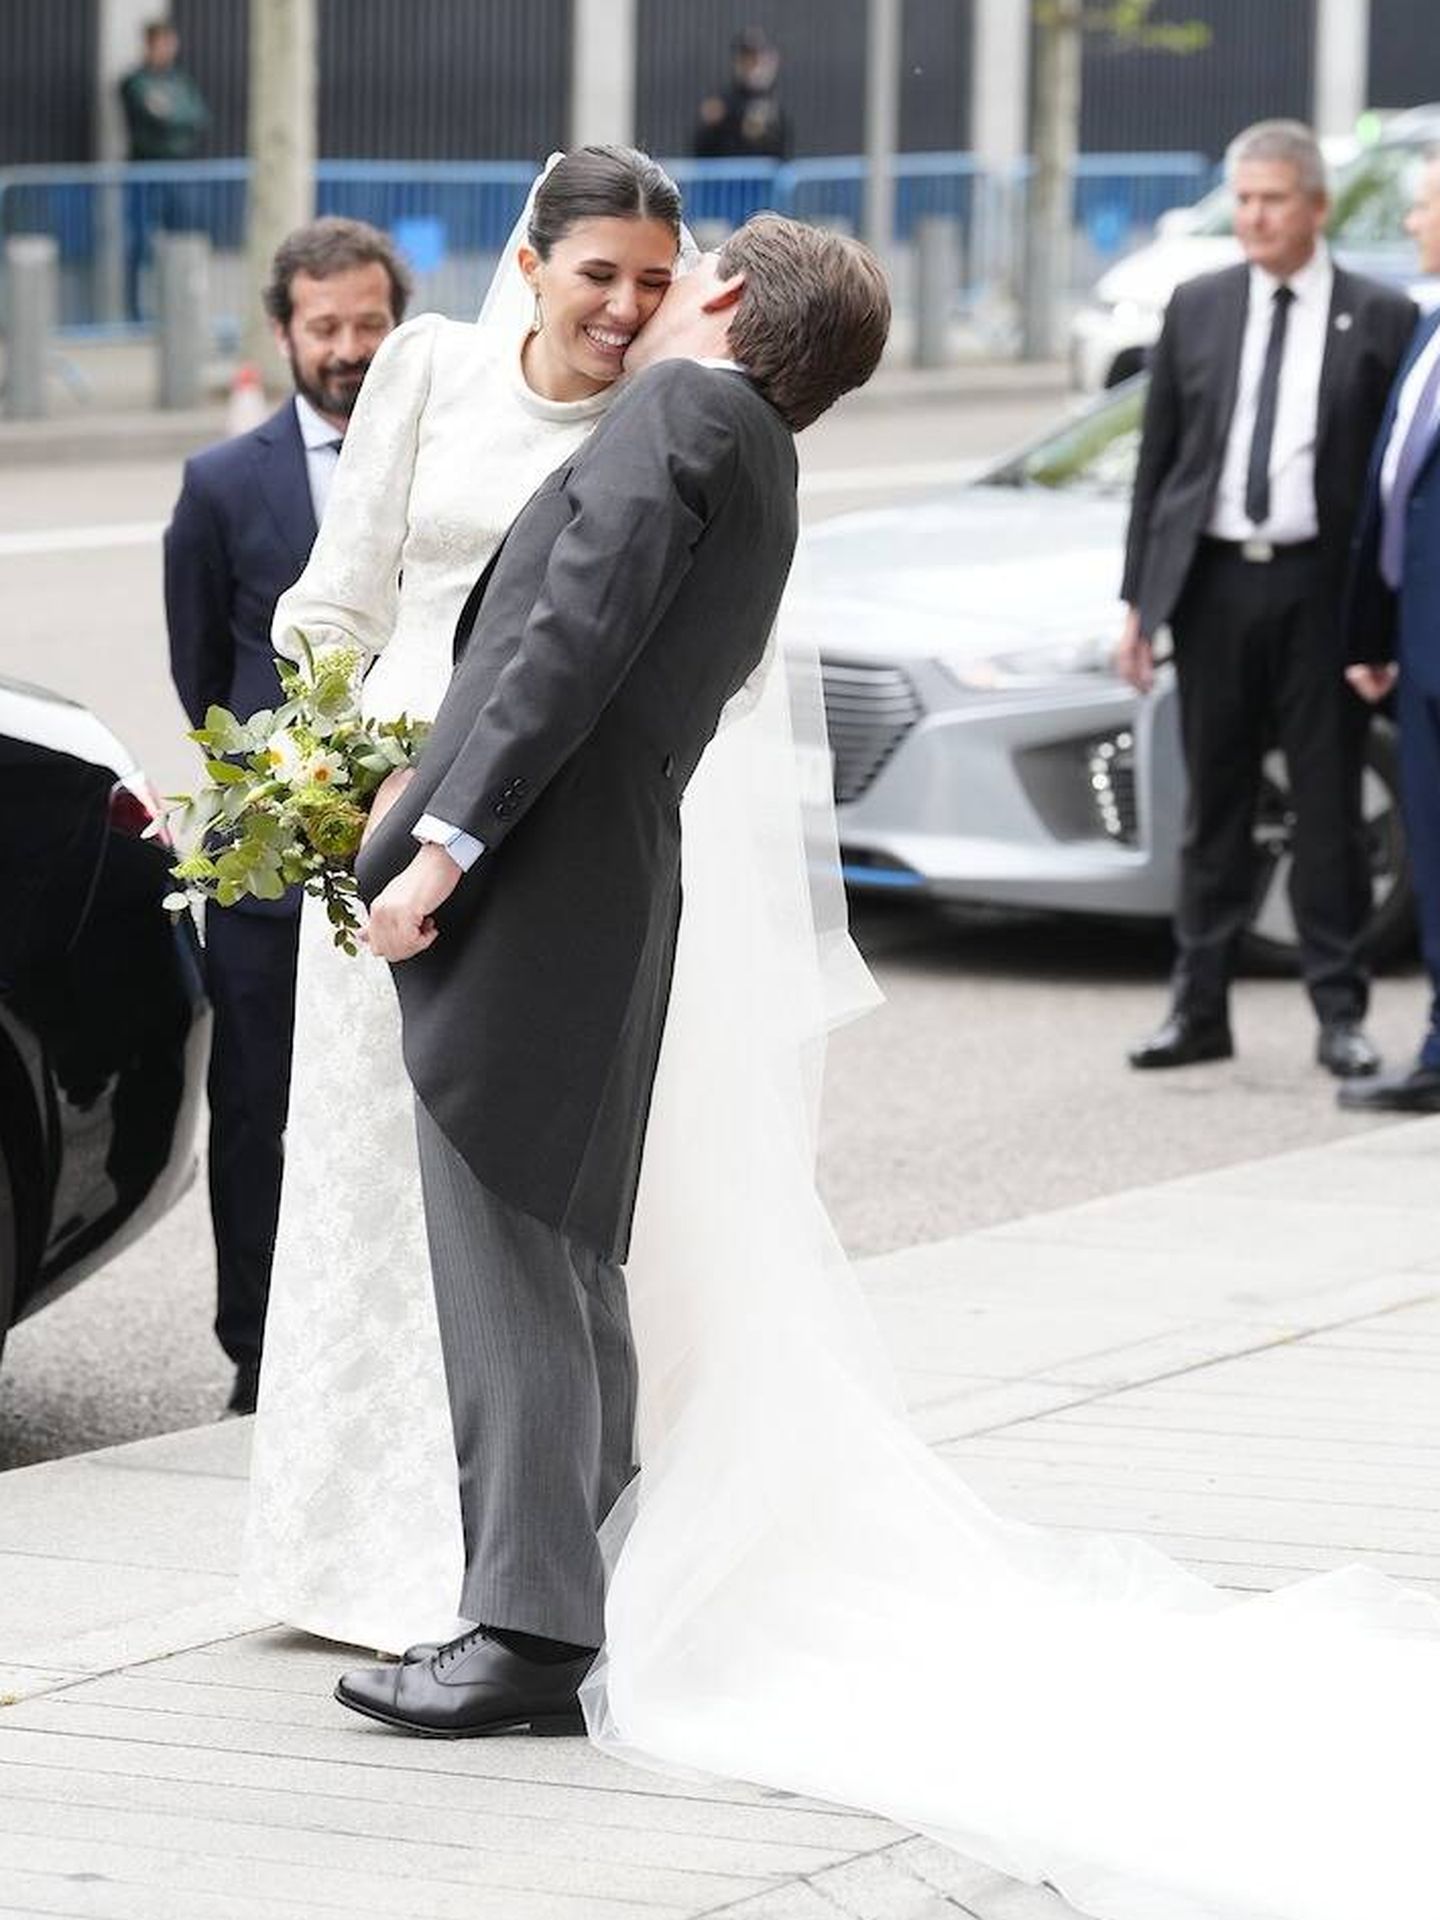 El tierno beso en la mejilla, tras su boda, entre Martínez-Almeida y Teresa Urquijo. (LP)